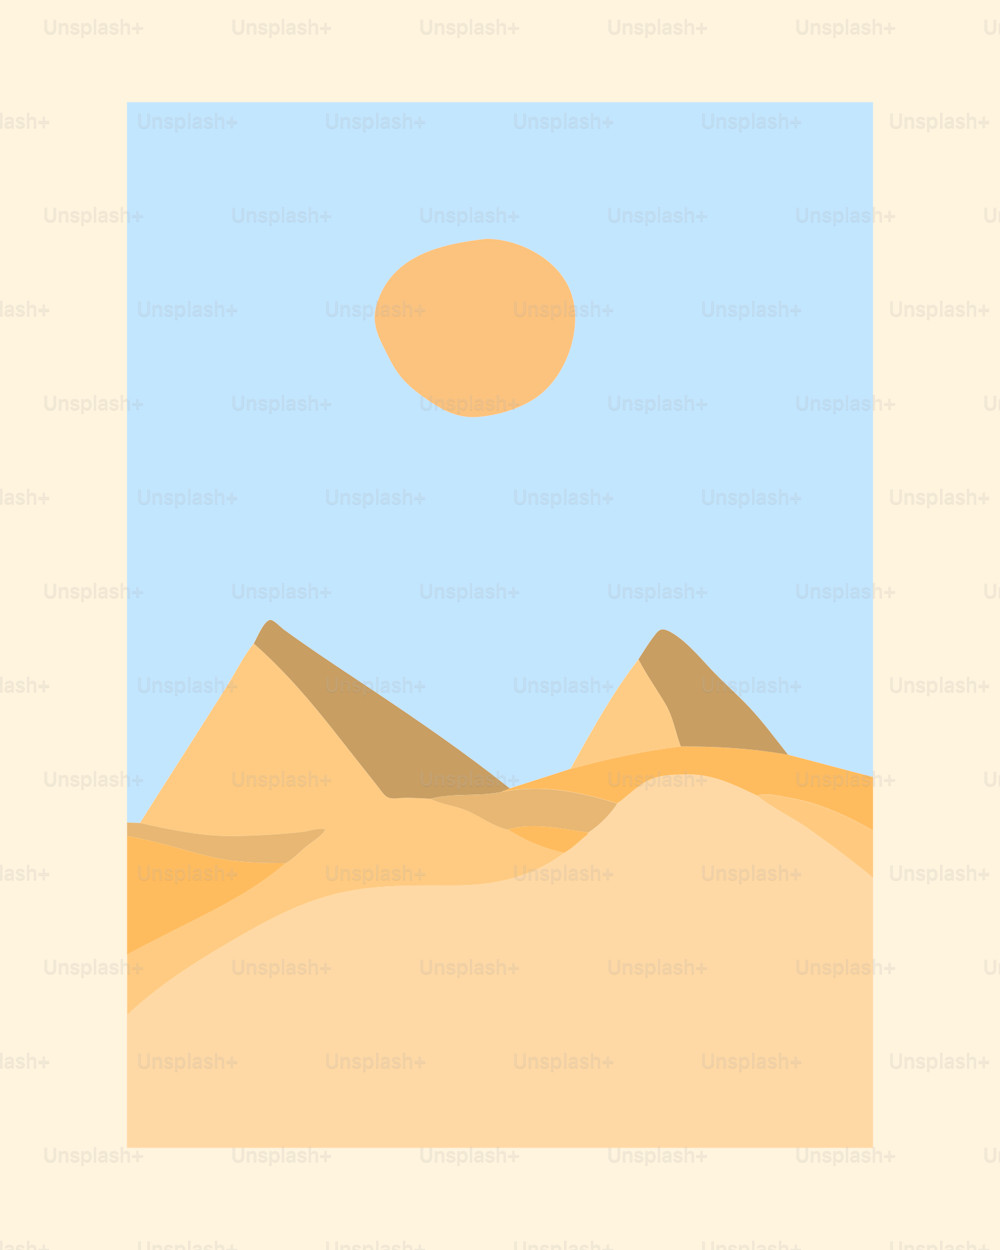 Una imagen de un desierto con un sol en el cielo